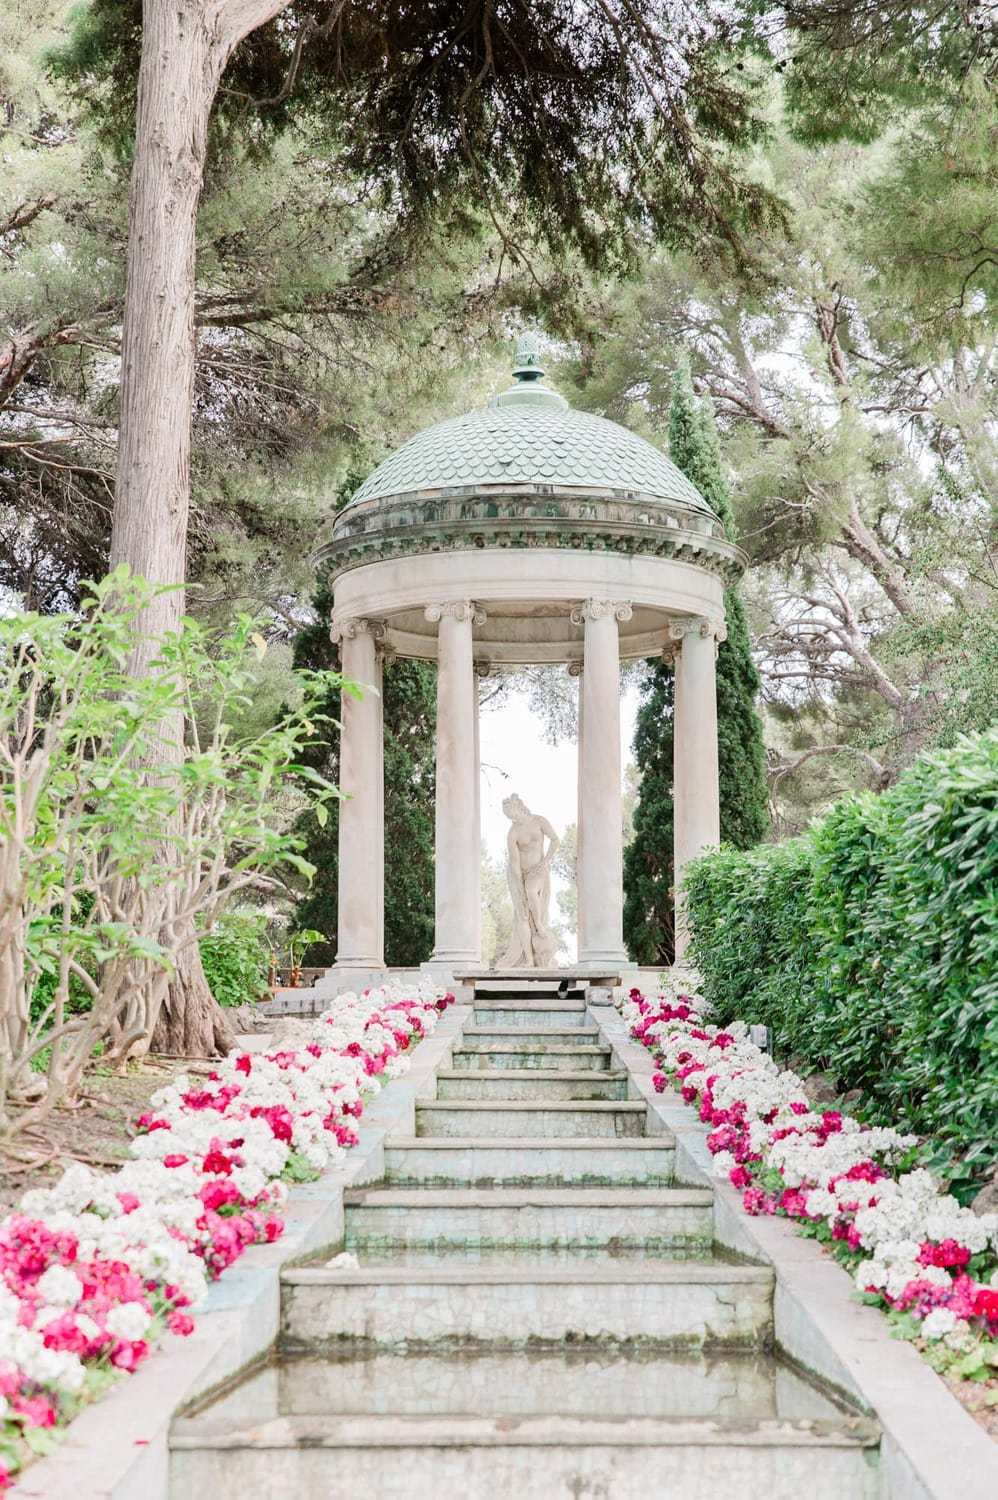 Beautiful garden of Villa Ephrussi